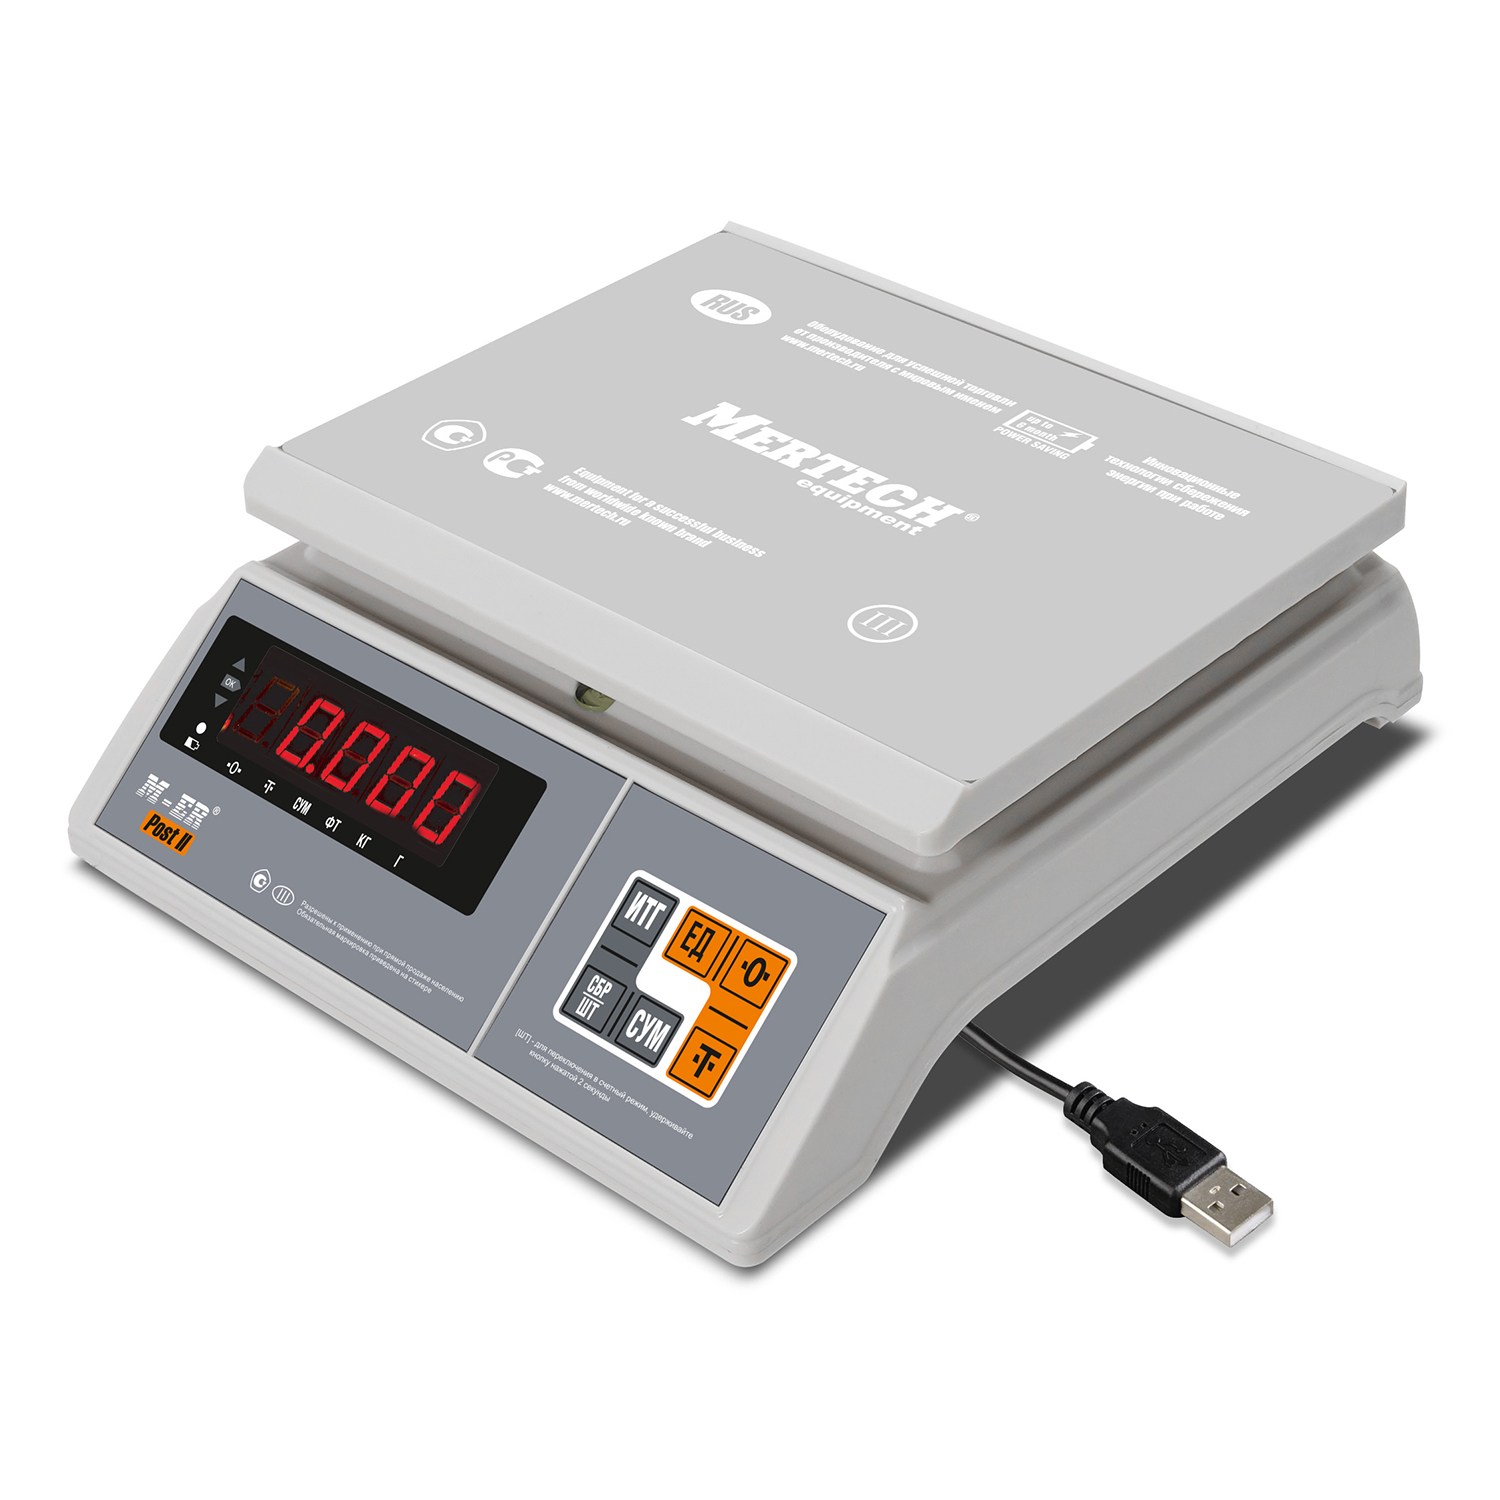 Порционные весы M-ER 326 AFU-6.01 "Post II" LED USB-COM (3109)